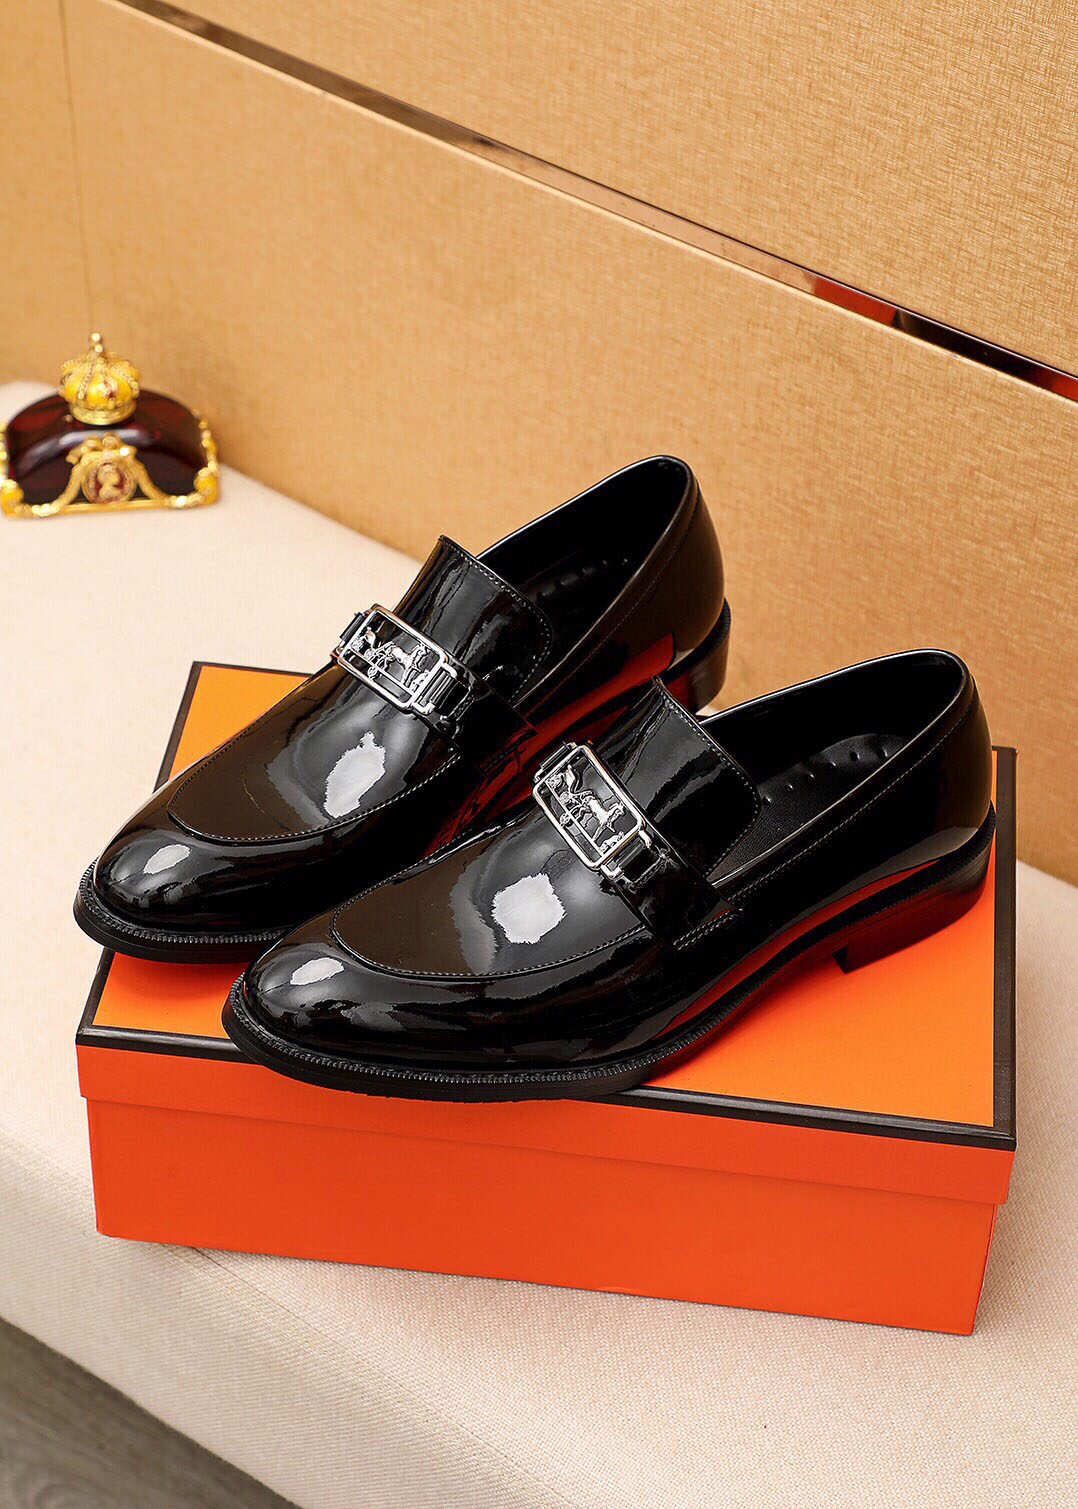 2023 zapatos de vestir formales para hombre caballeros cuero genuino marca diseñador negocios Oxfords hombre Slip On Casual mocasines tamaño 38-45